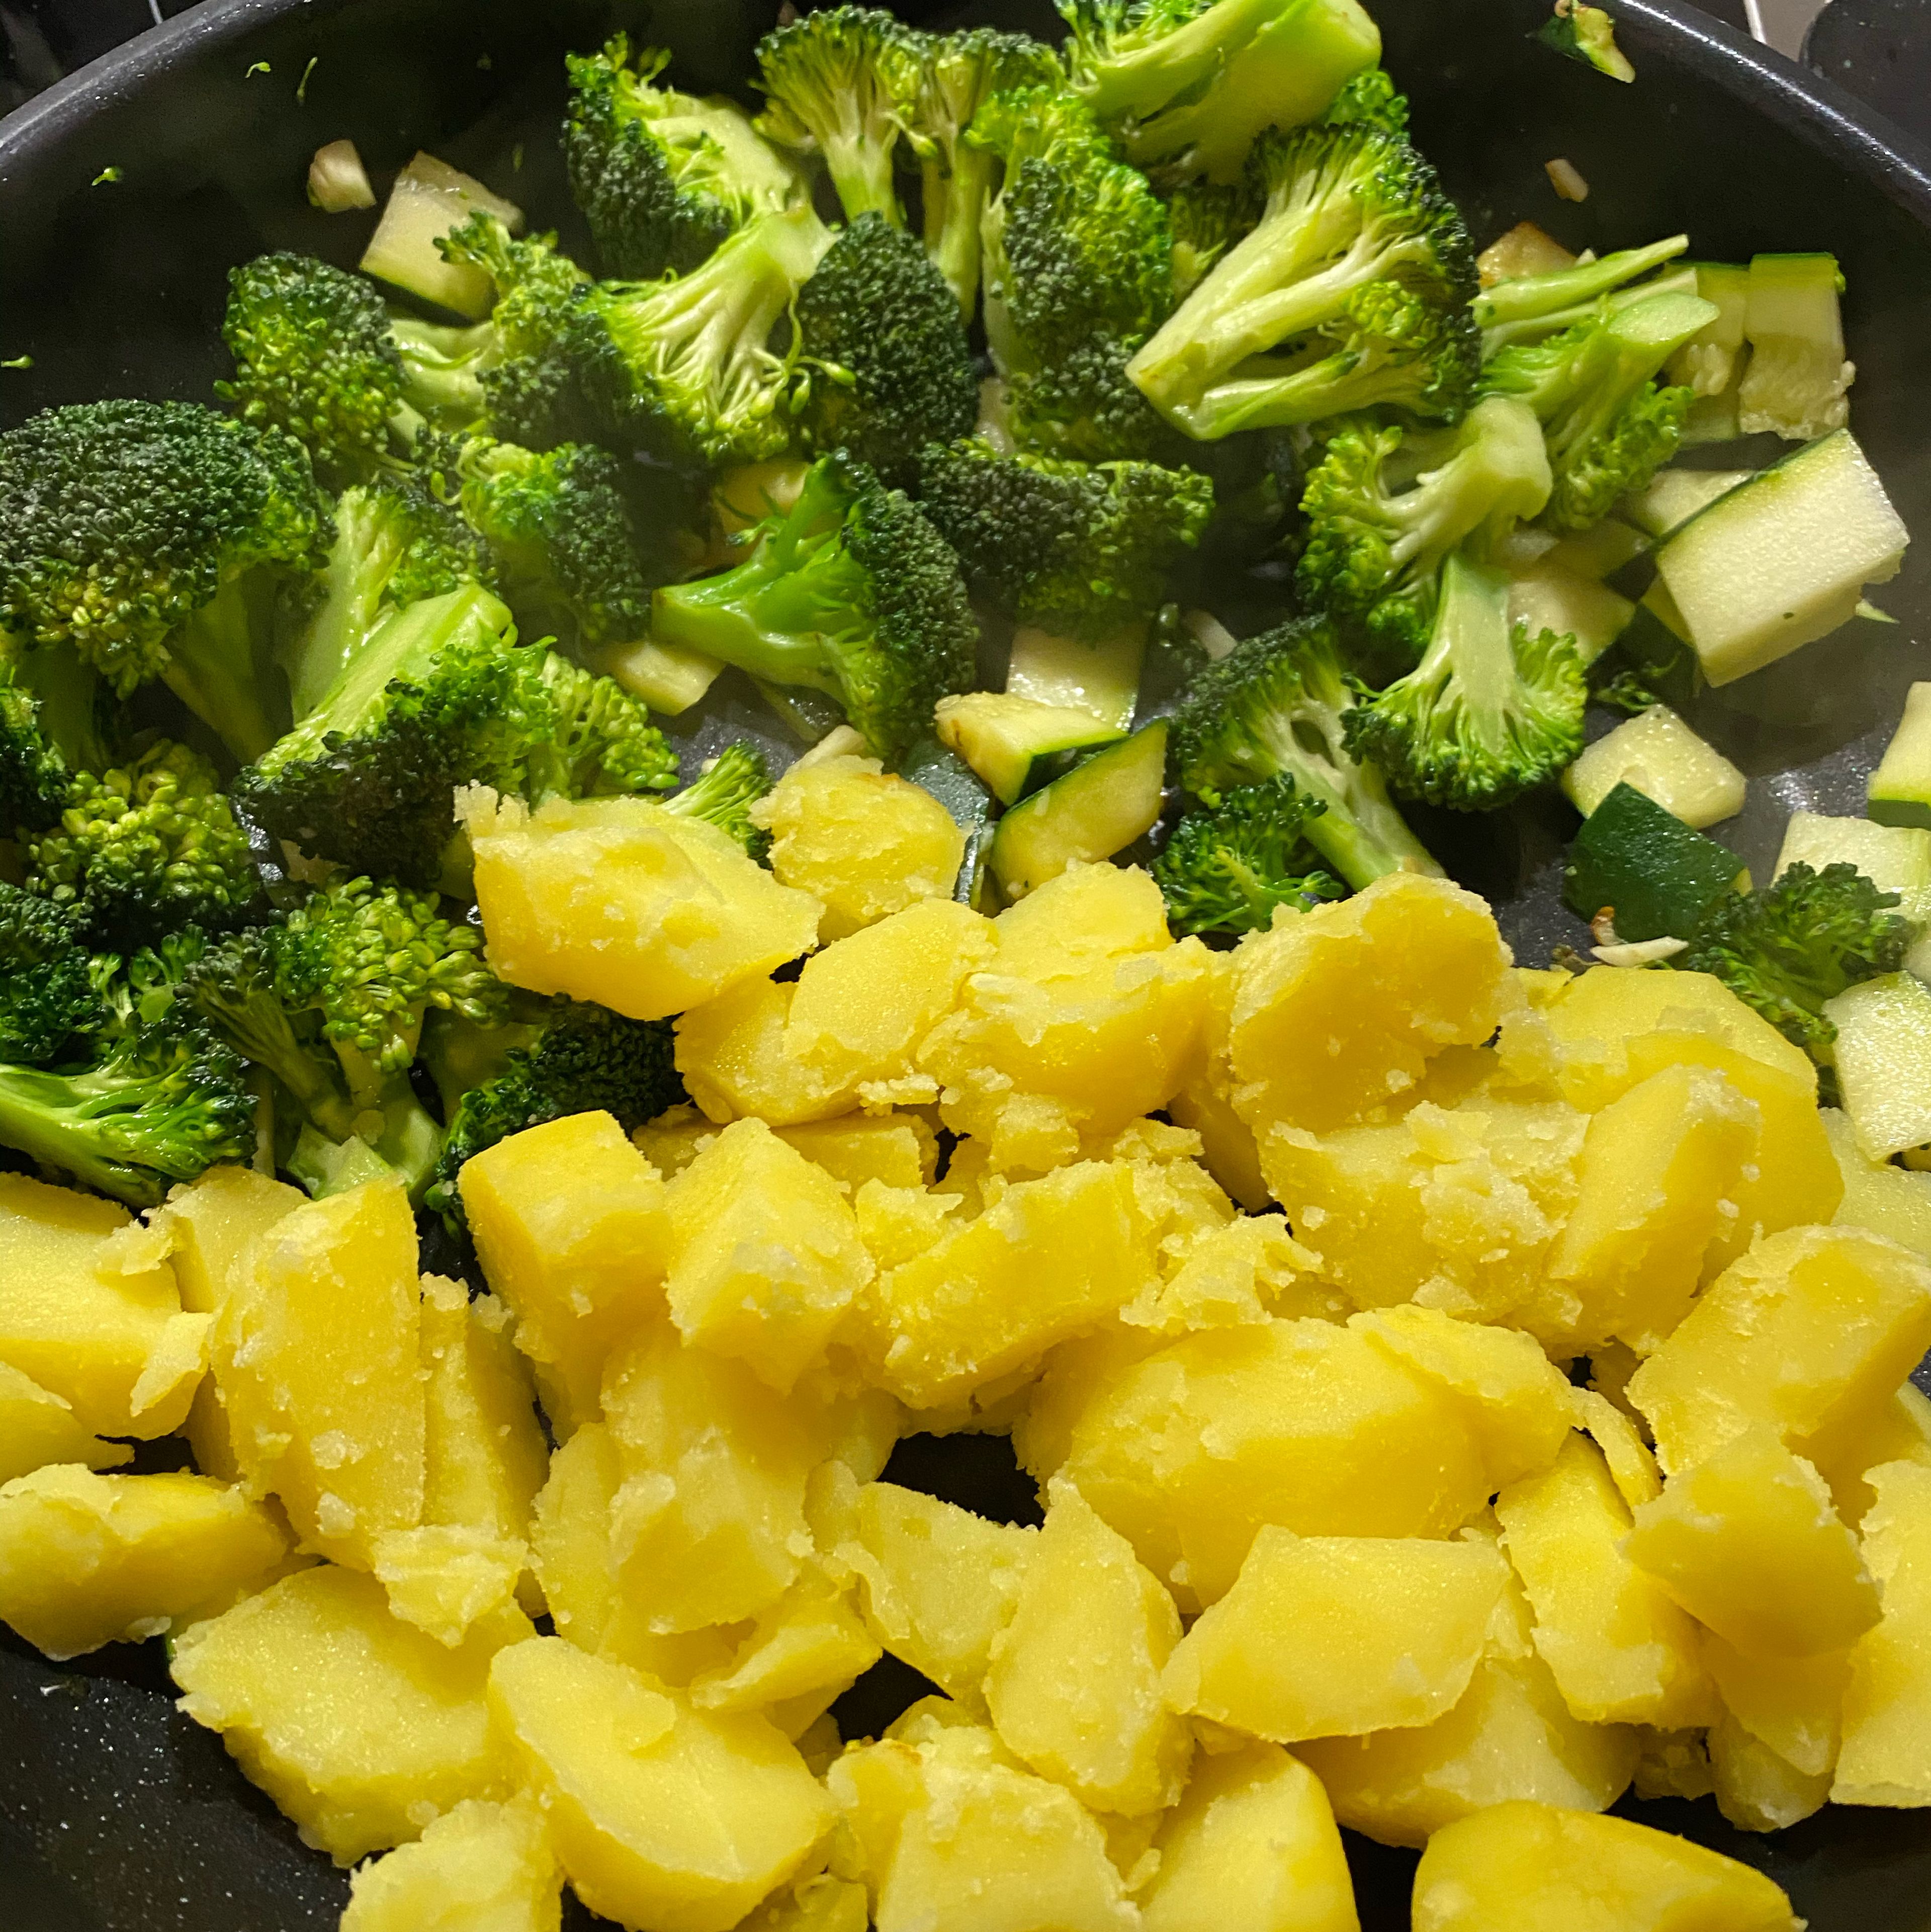 Zuerst das Gemüse scharf in Öl anbraten. Nach ca. 5 Minuten die Kartoffeln zugeben und diese ebenfalls mit anbraten, damit sie eine schöne Farbe und Knack bekommen. Alles schon mal leicht mit Salz & Pfeffer würzen. 